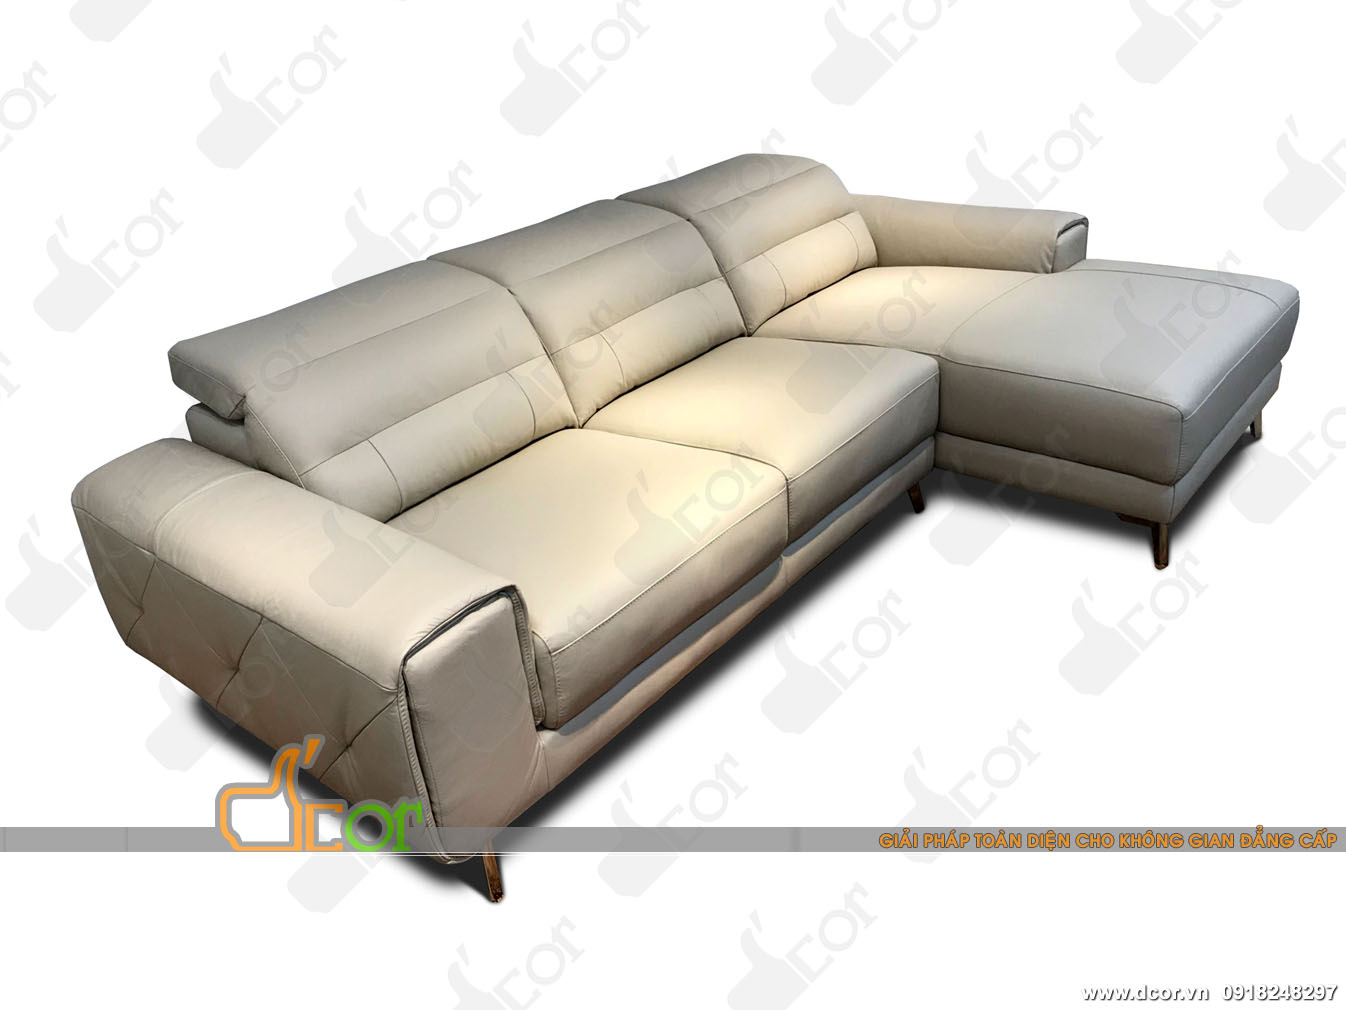 Không thể rời mắt với mẫu ghế sofa đẹp lịch lãm DG705 nhập khẩu chính hãng Malaysia > Không thể rời mắt với mẫu ghế sofa đẹp lịch lãm nhập khẩu chính hãng Malaysia